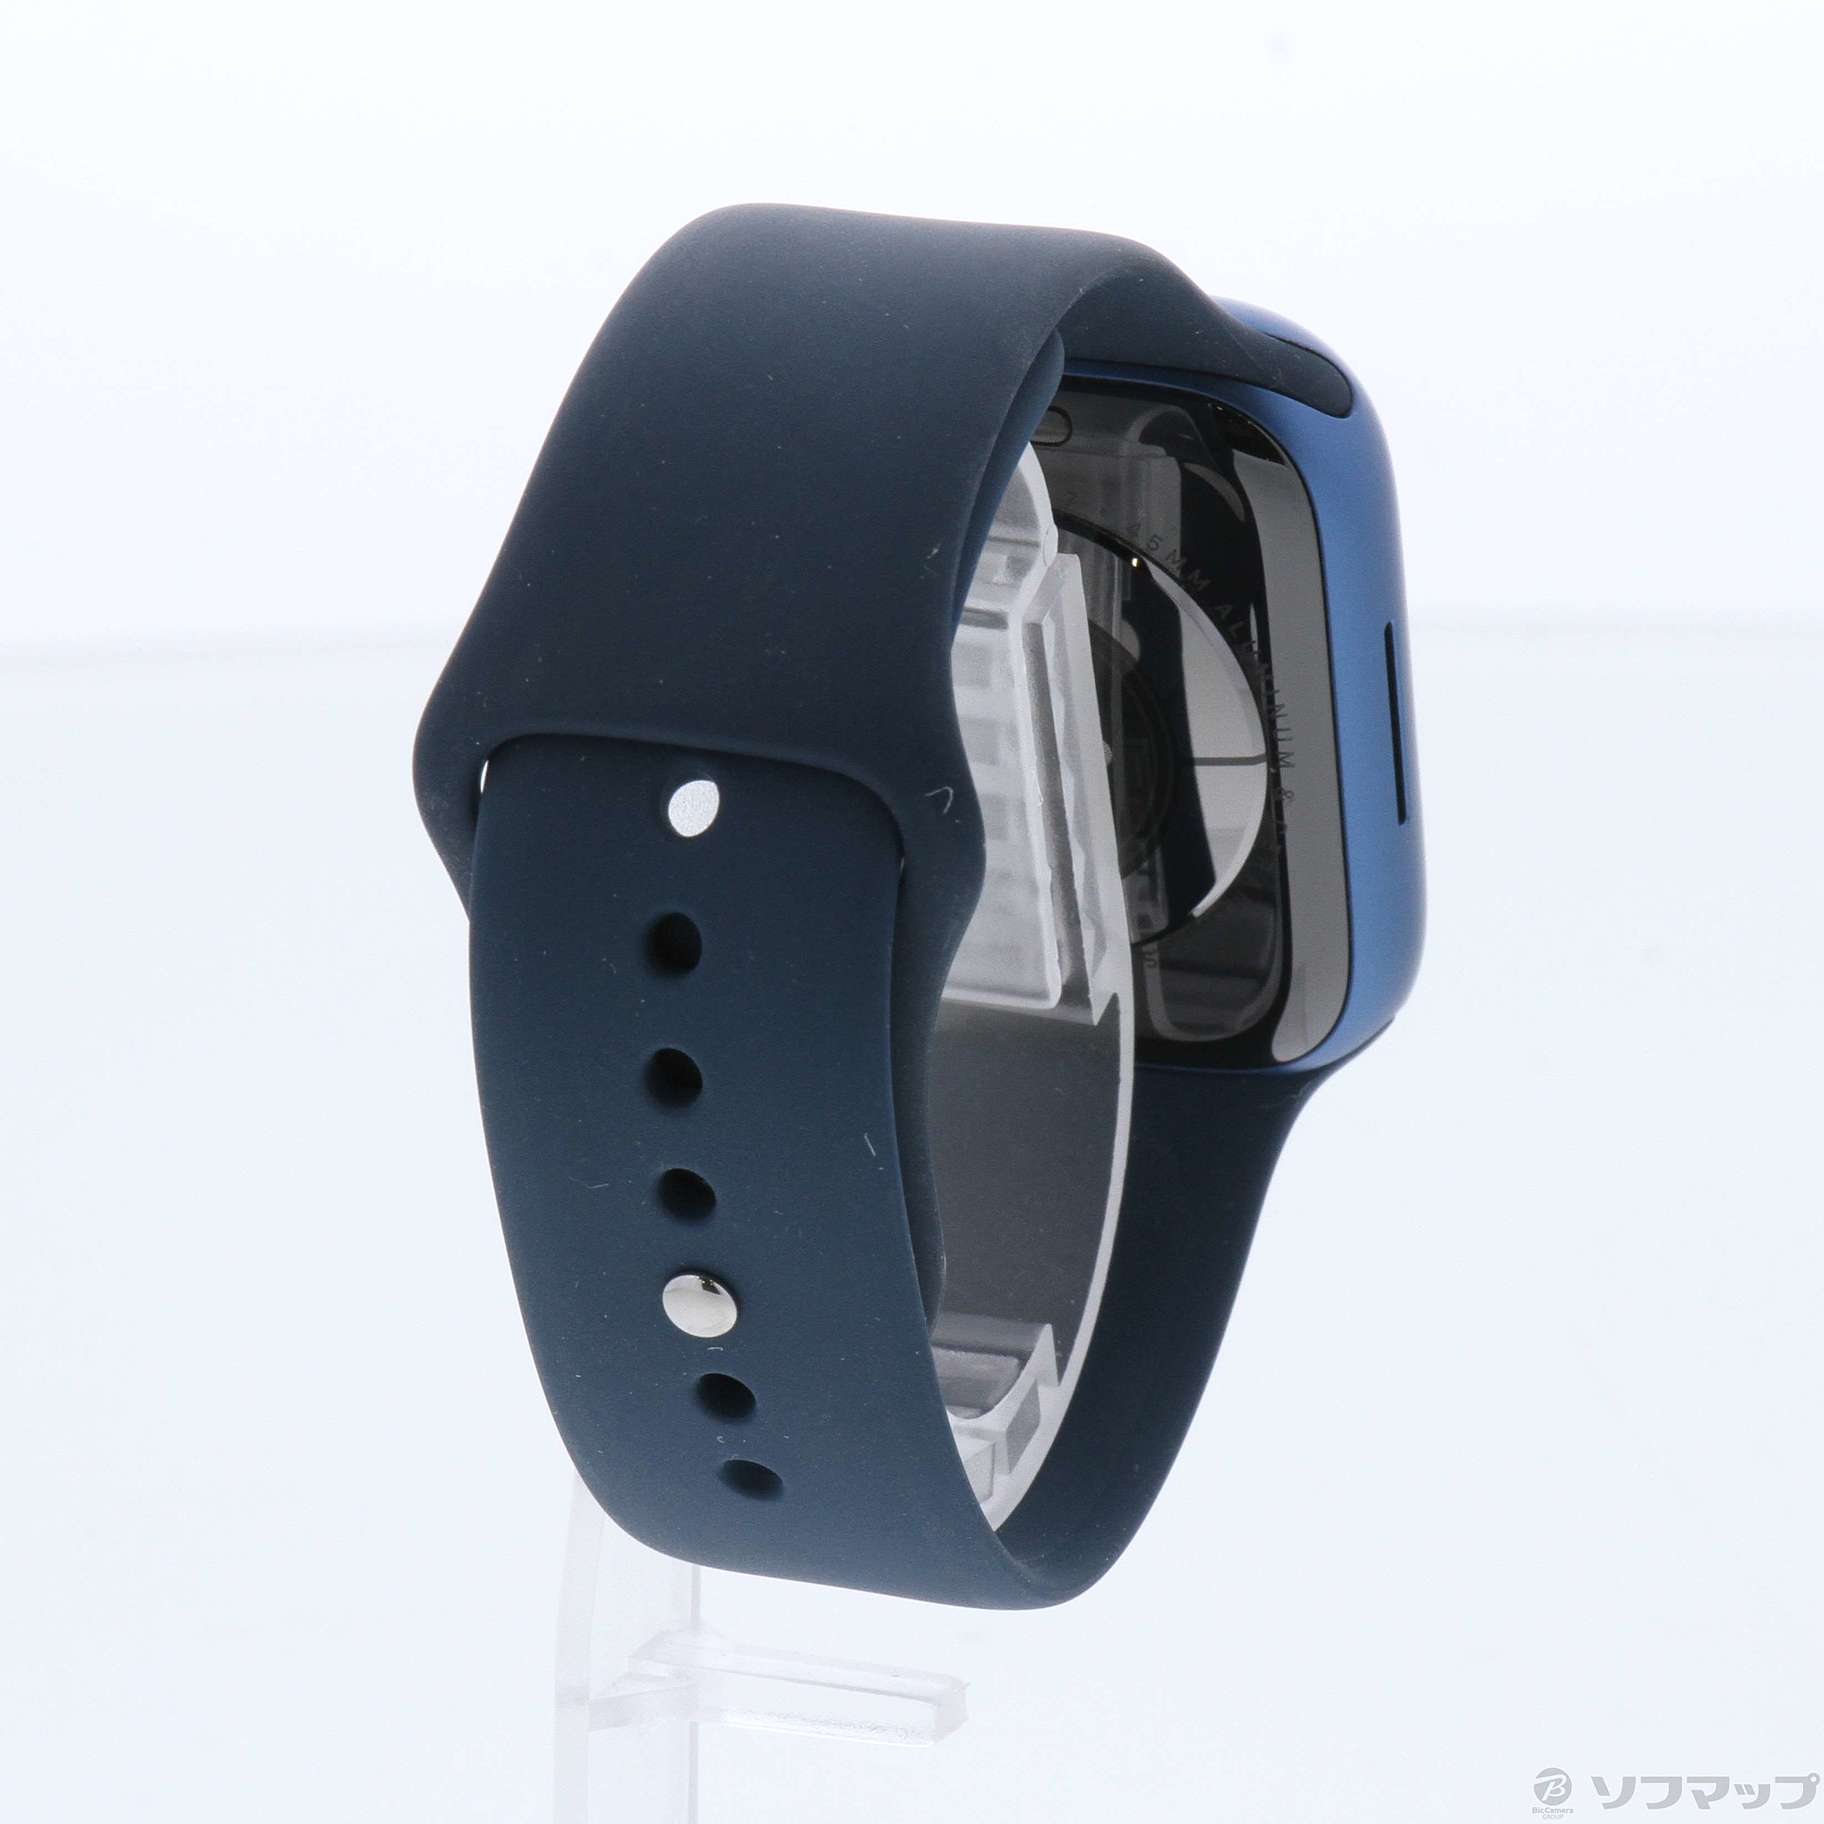 中古】Apple Watch Series 7 GPS 45mm ブルーアルミニウムケース 